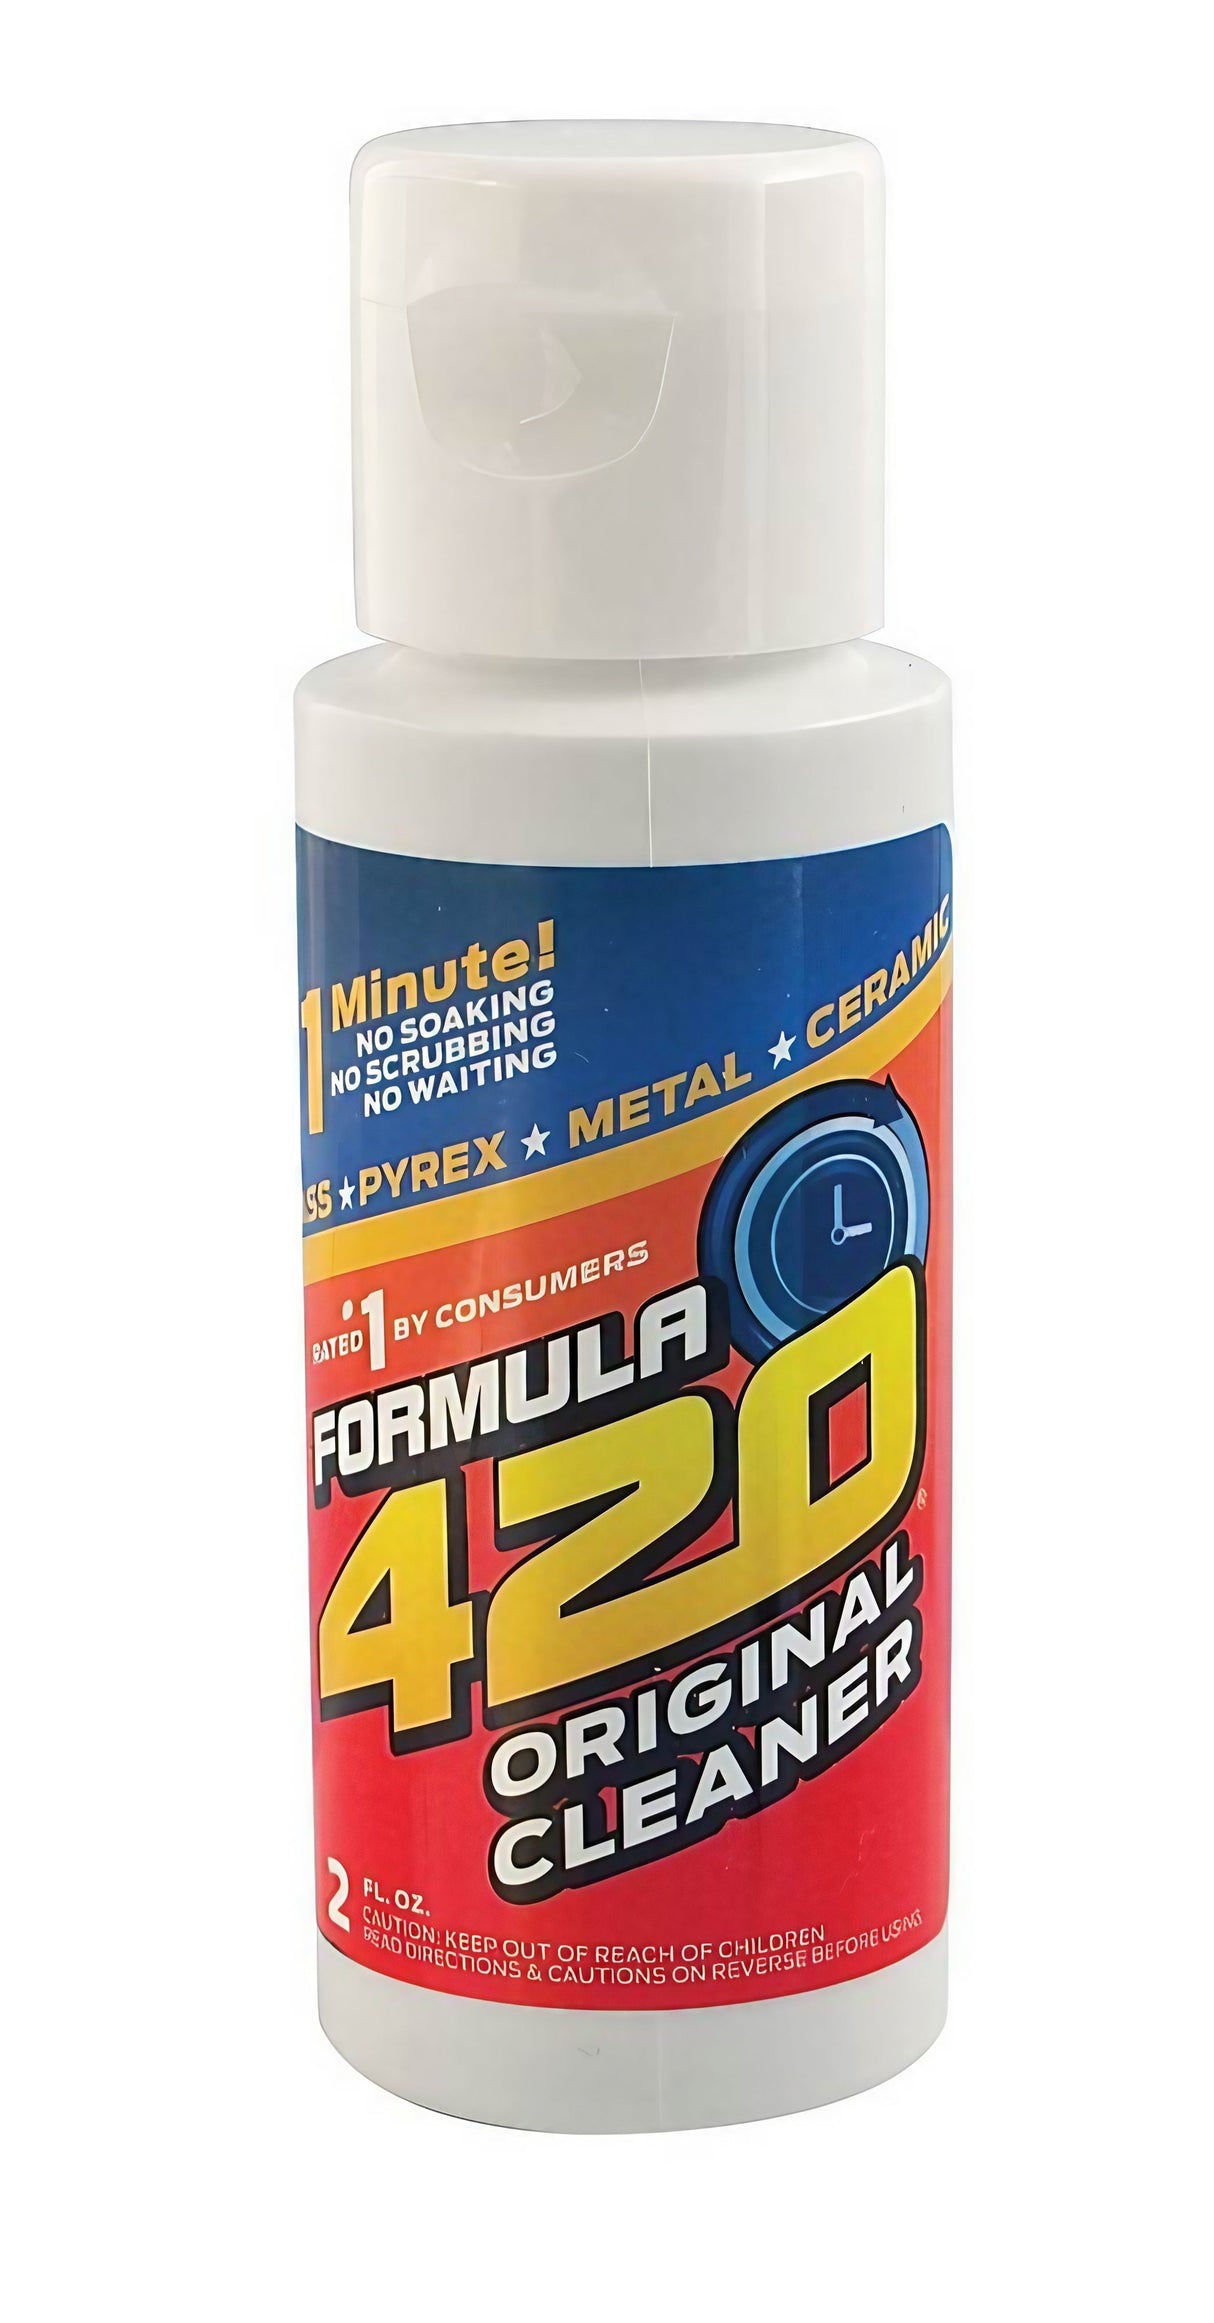 Formula 420 / 710 Cleaner - 72 Pack Display Bulk